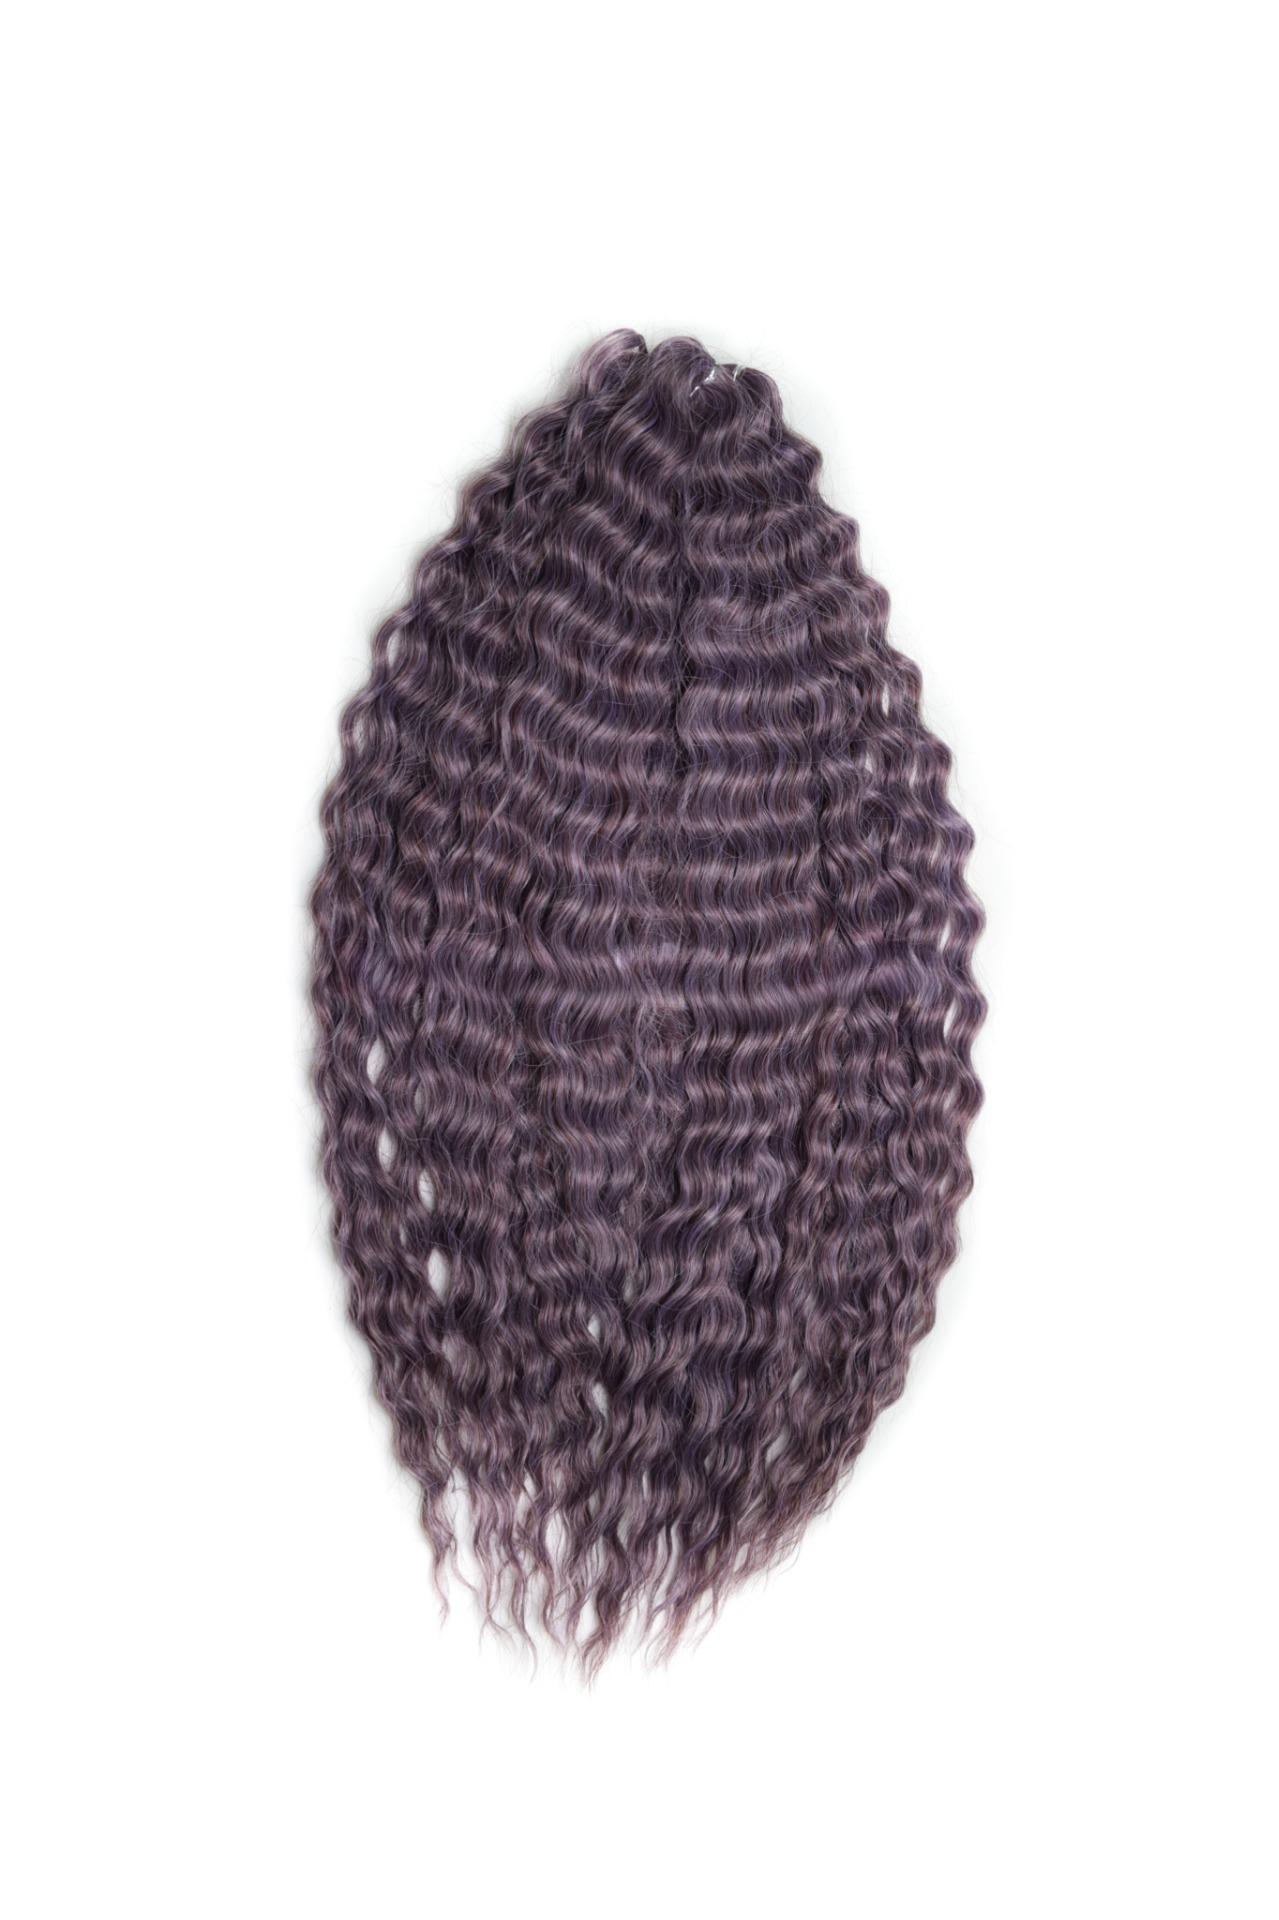 Афрокудри для плетения волос Ariel Ариэль цвет PURPLE GREY длина 60см вес 300г афрокудри для плетения волос ariel ариэль dg 25 зеленый длина 60см вес 300г